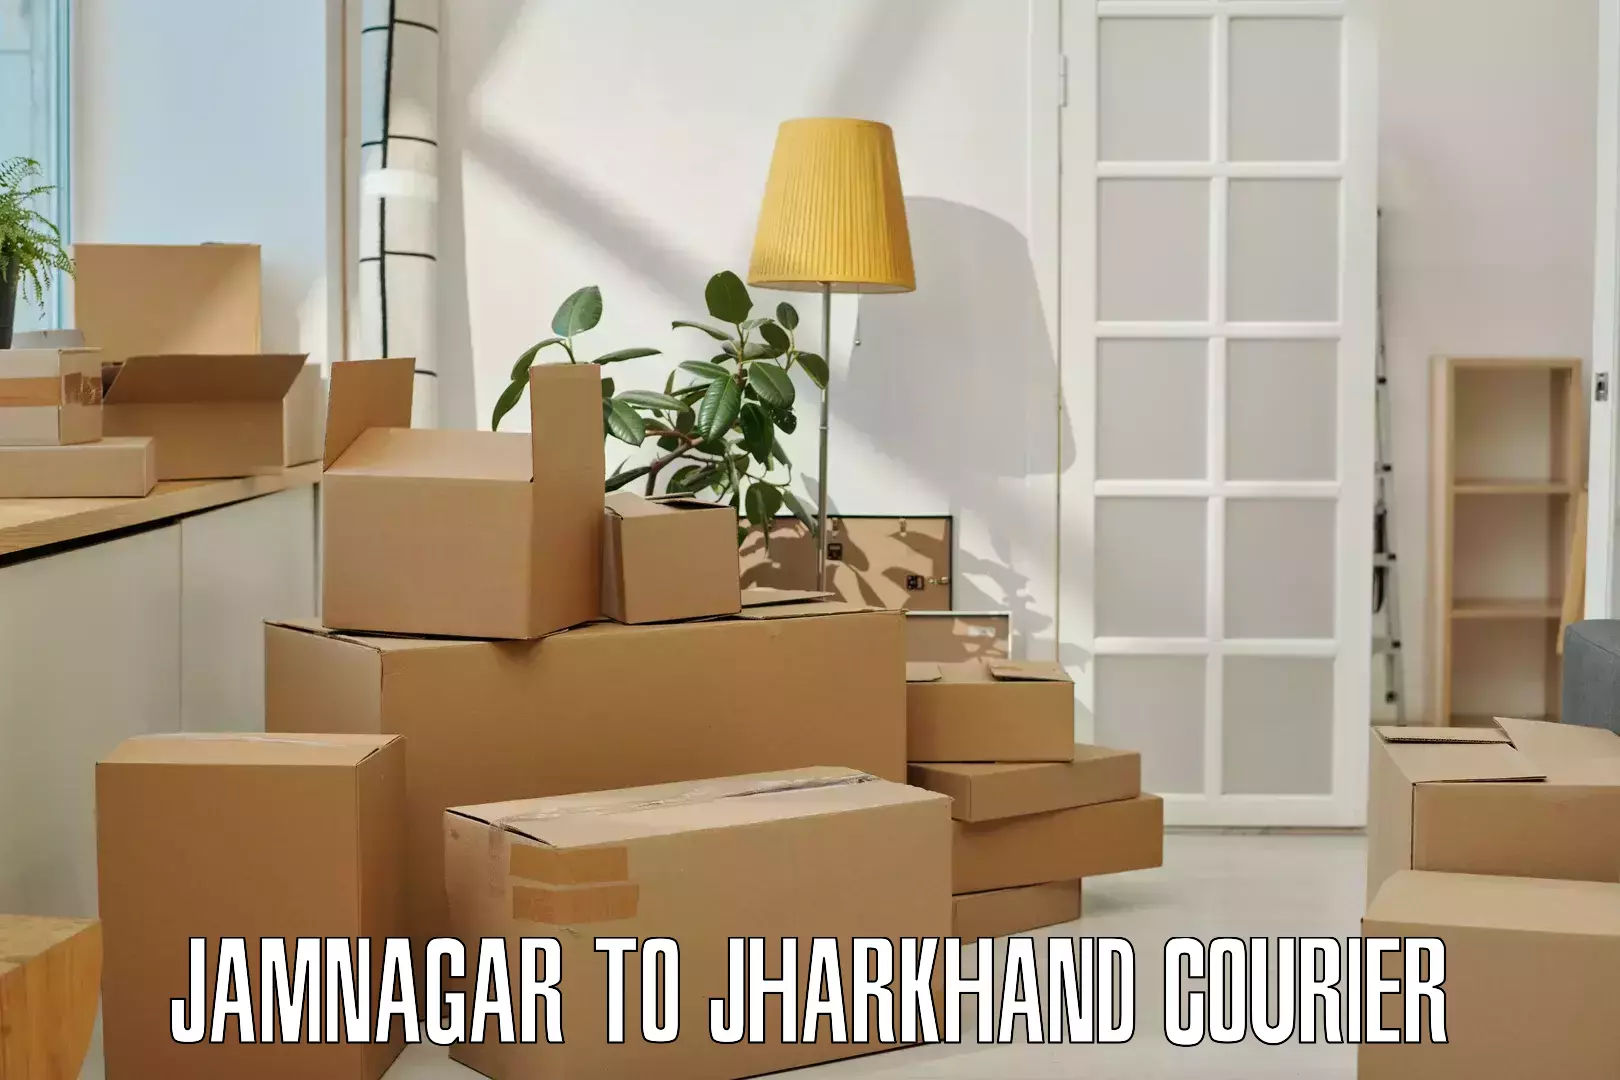 Holiday shipping services Jamnagar to IIT Dhanbad